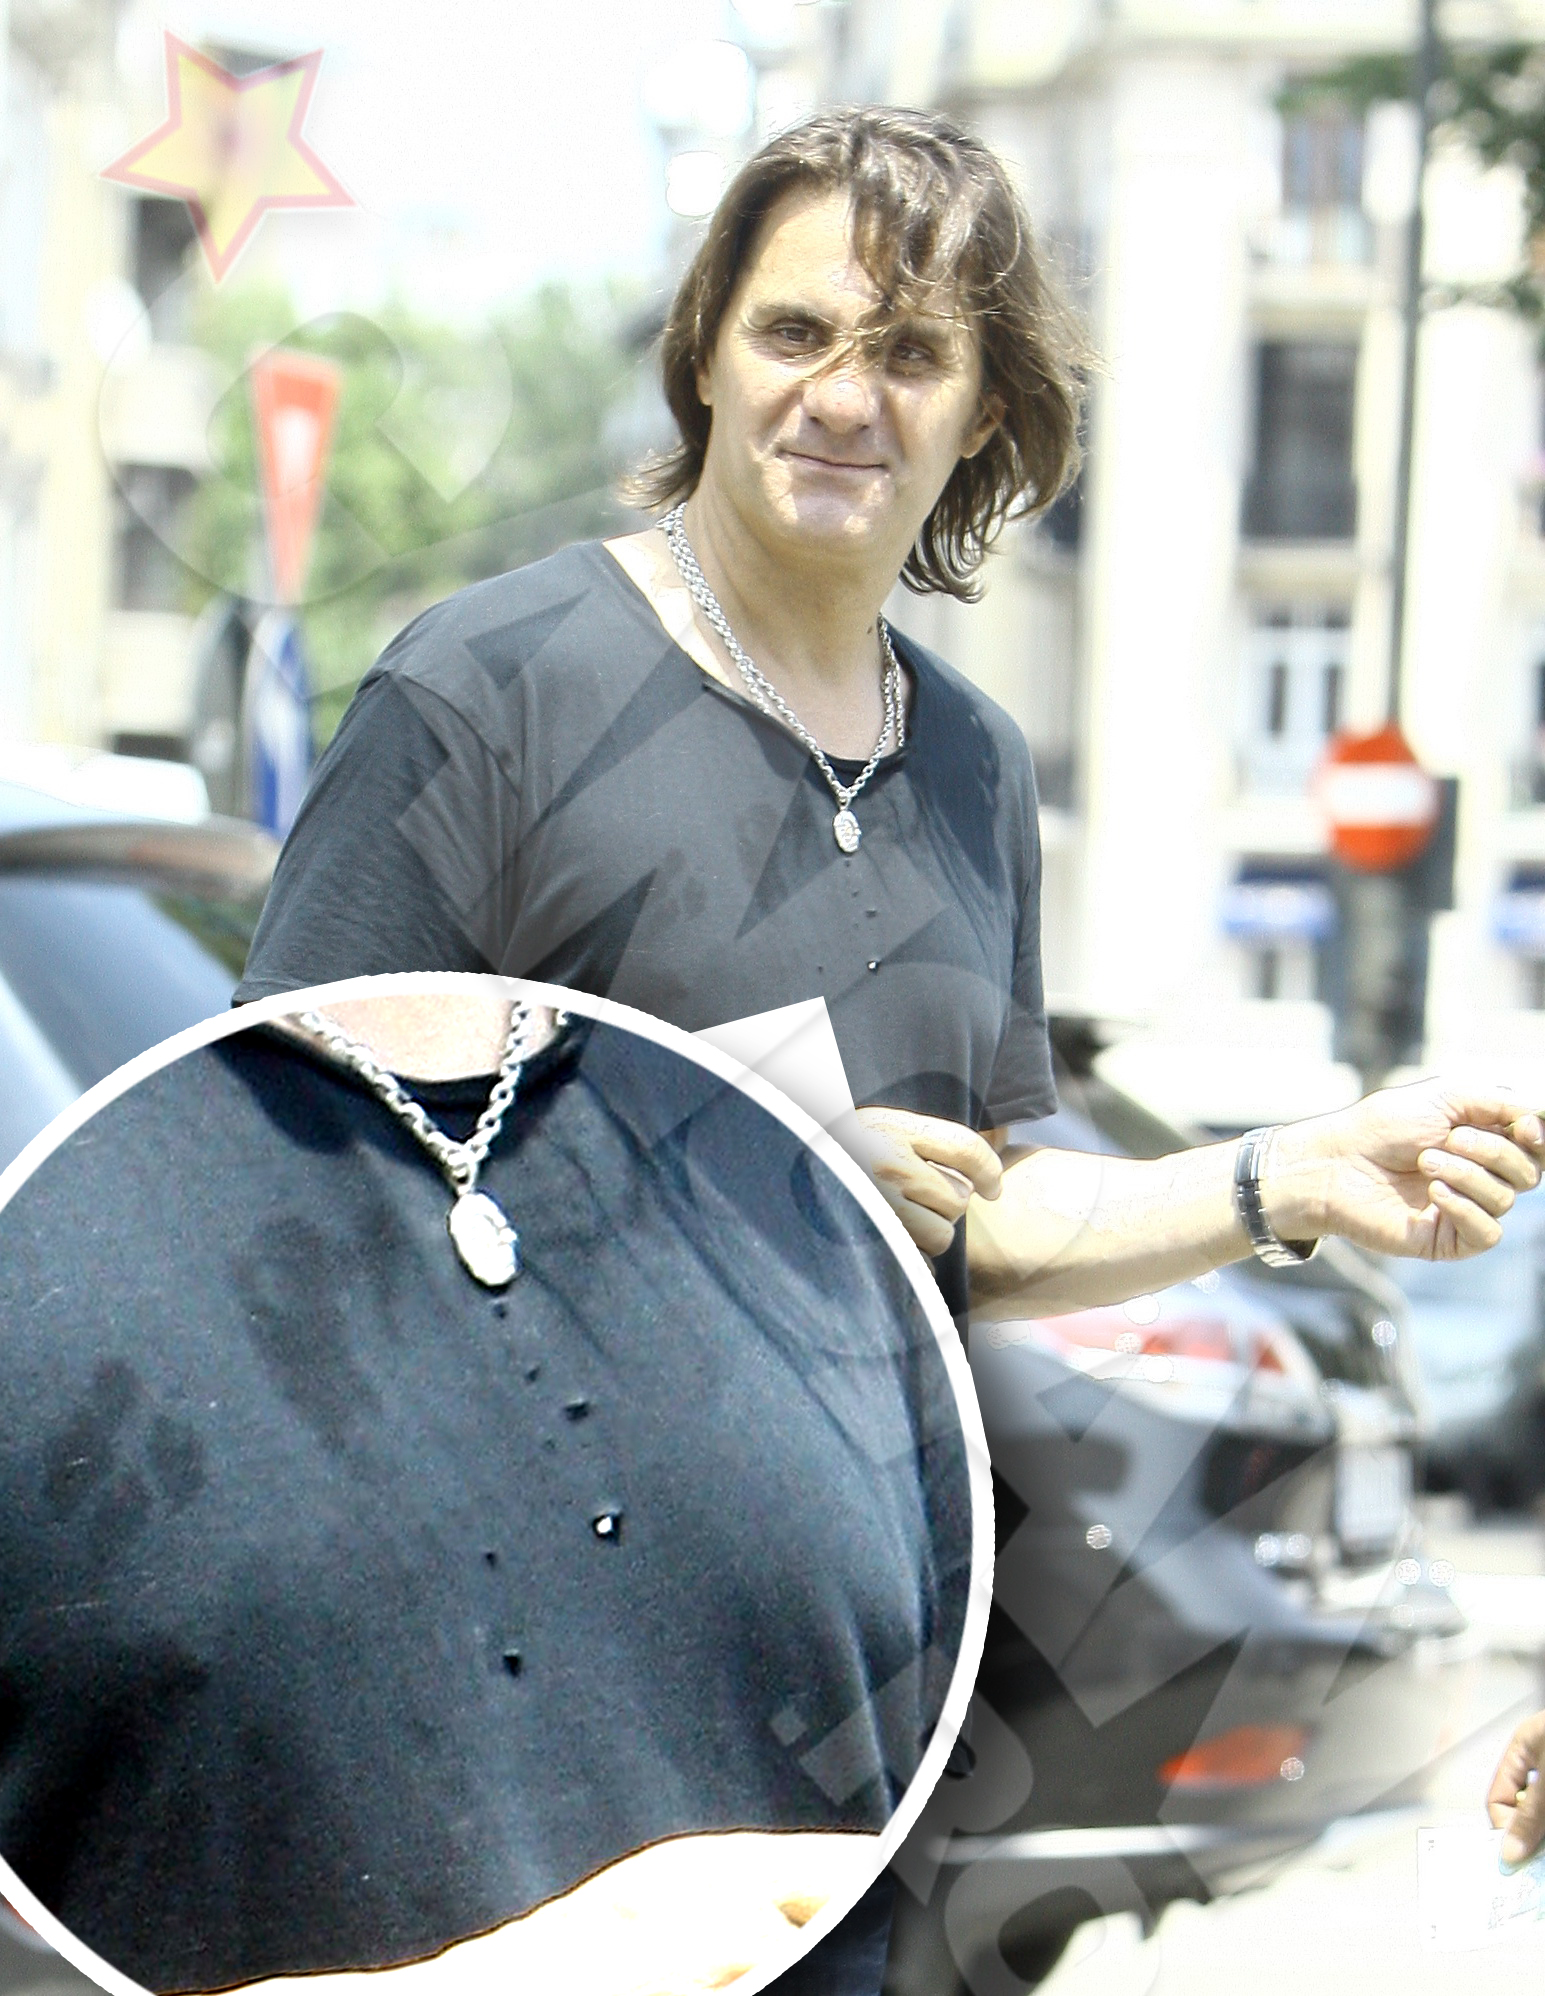 Tricoul lui Marian Ionescu arata de parca ar fi fost scos din cosul de gunoi si nu din sifonier